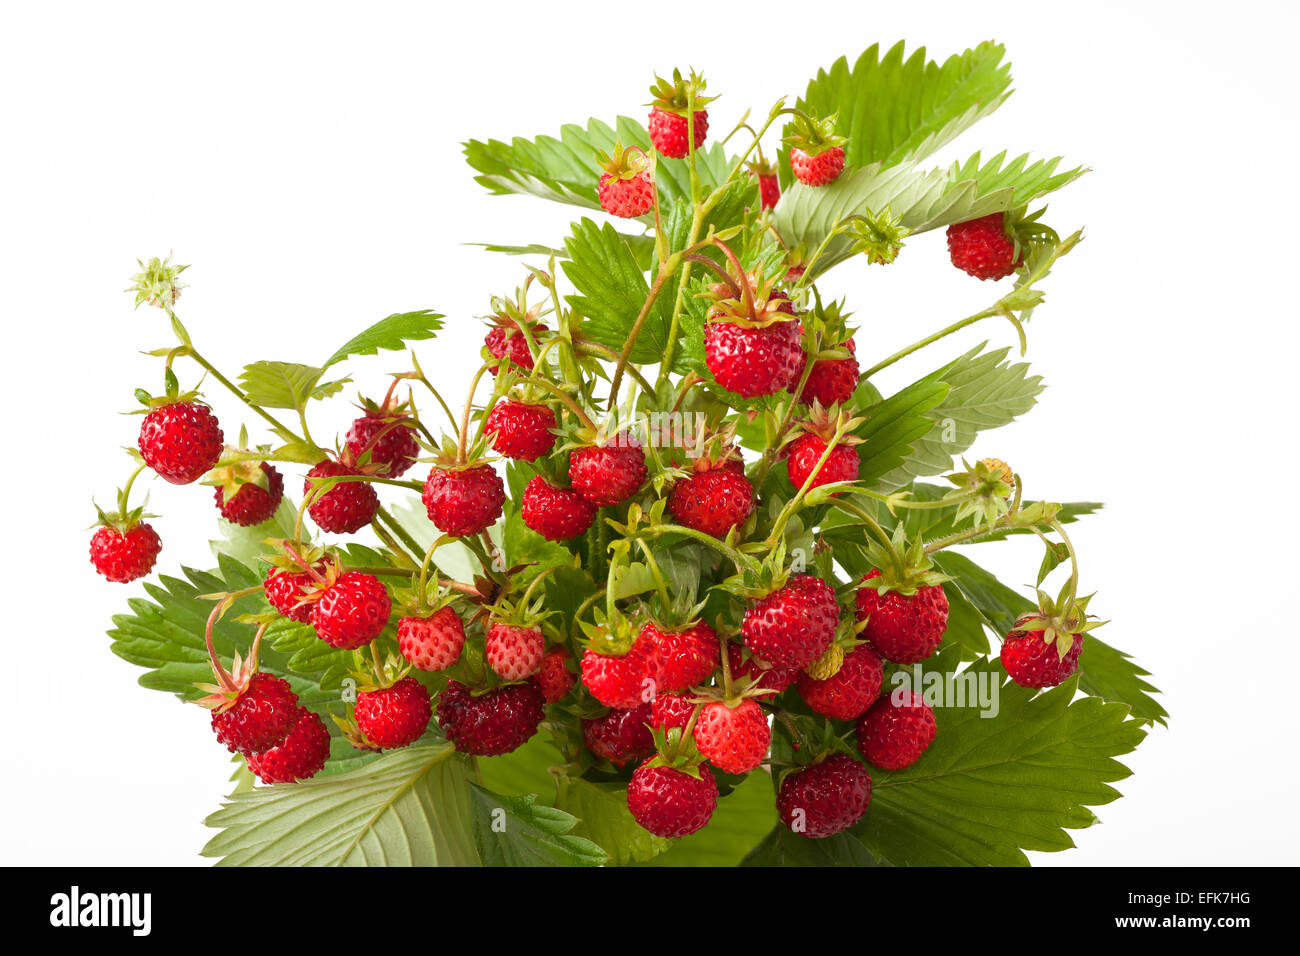 Wild strawberry isolated on white background. Stock Photo